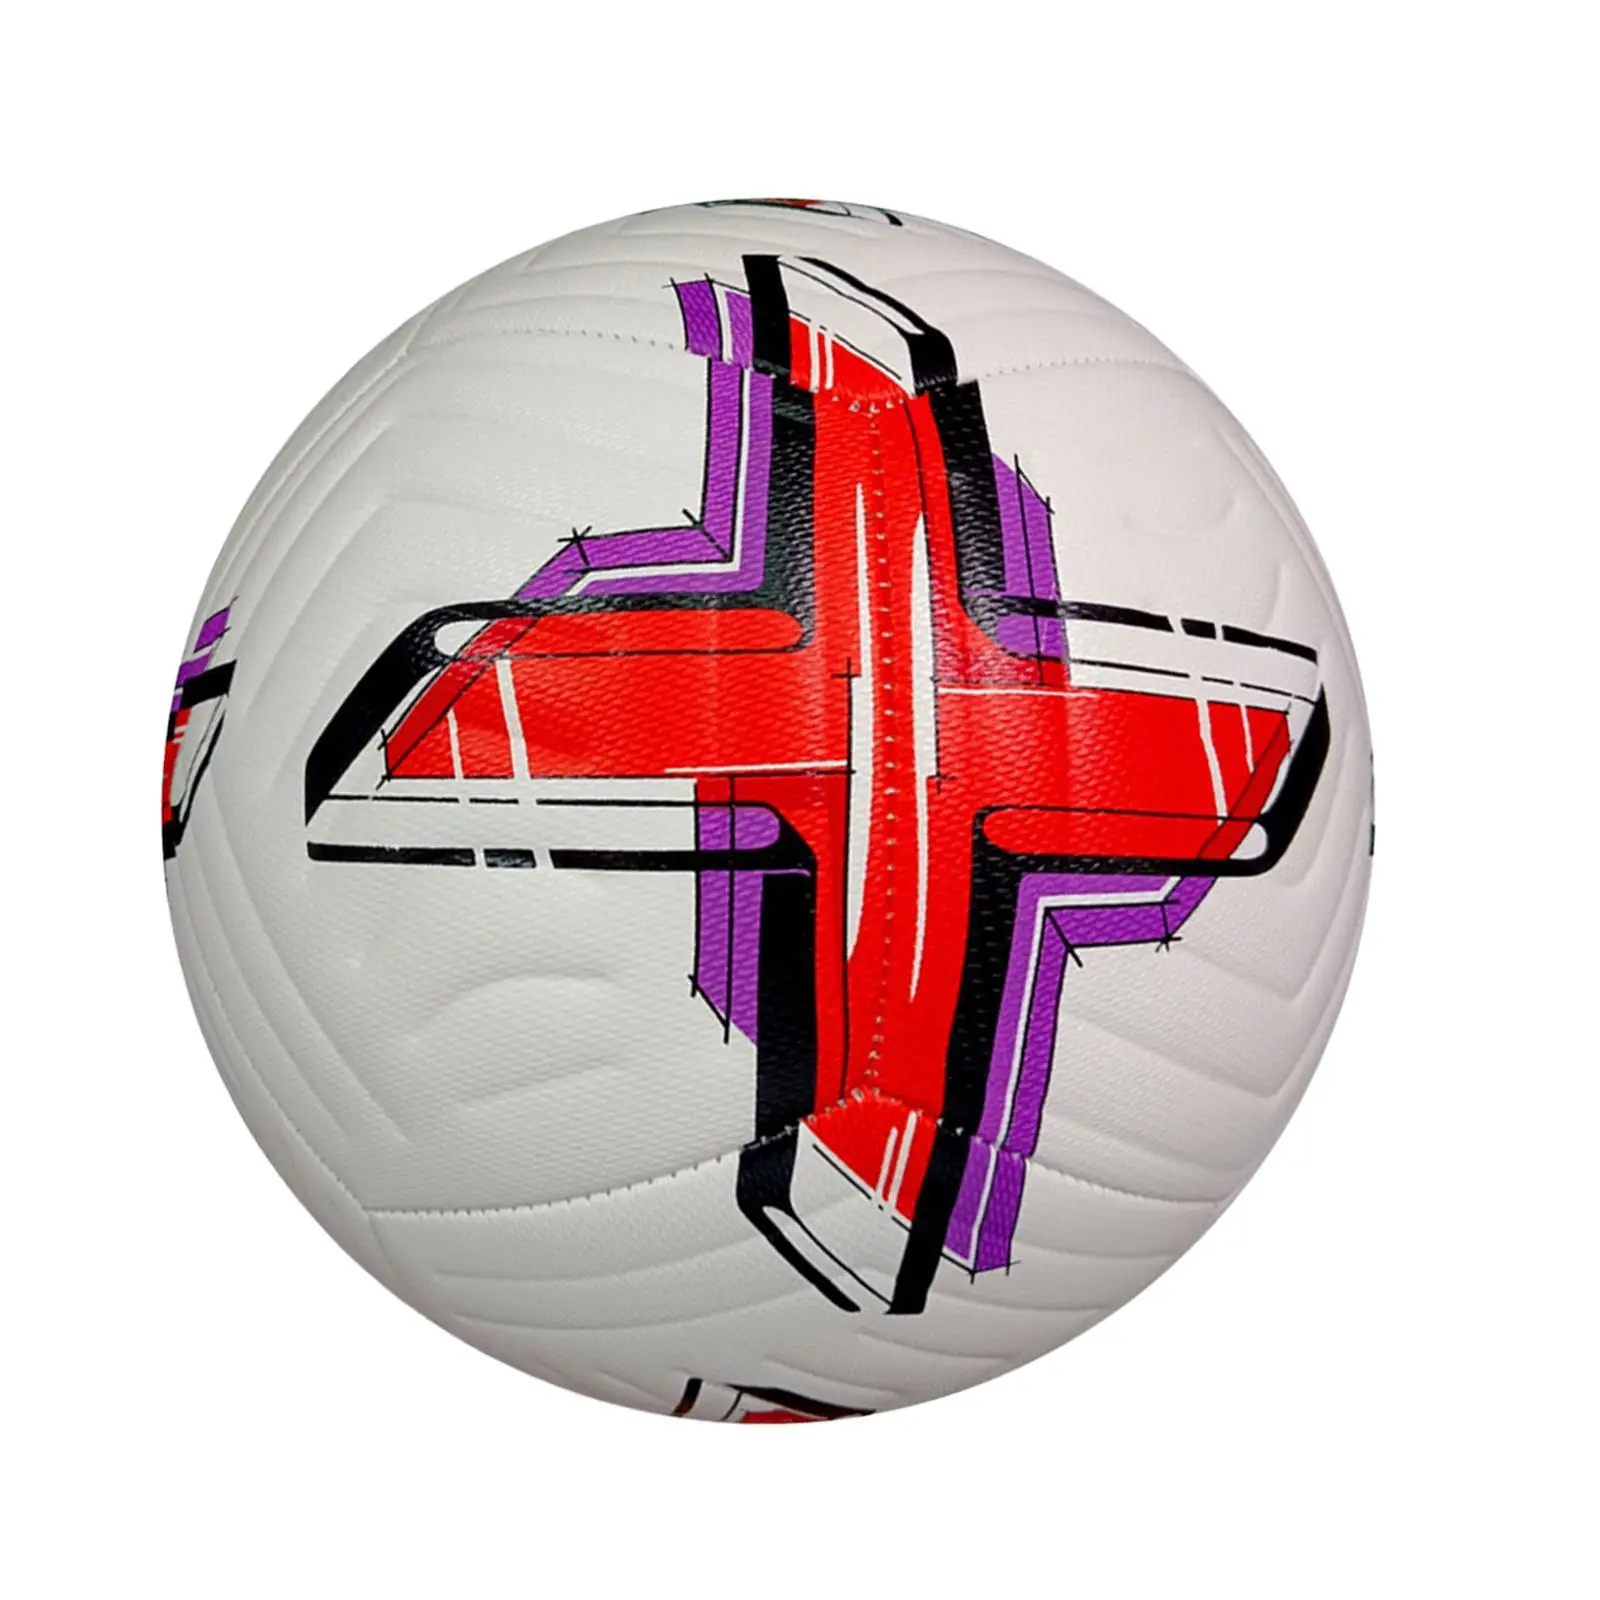 Soccer Ball Size 5 Soccer Training Equipment Football Training Ball for